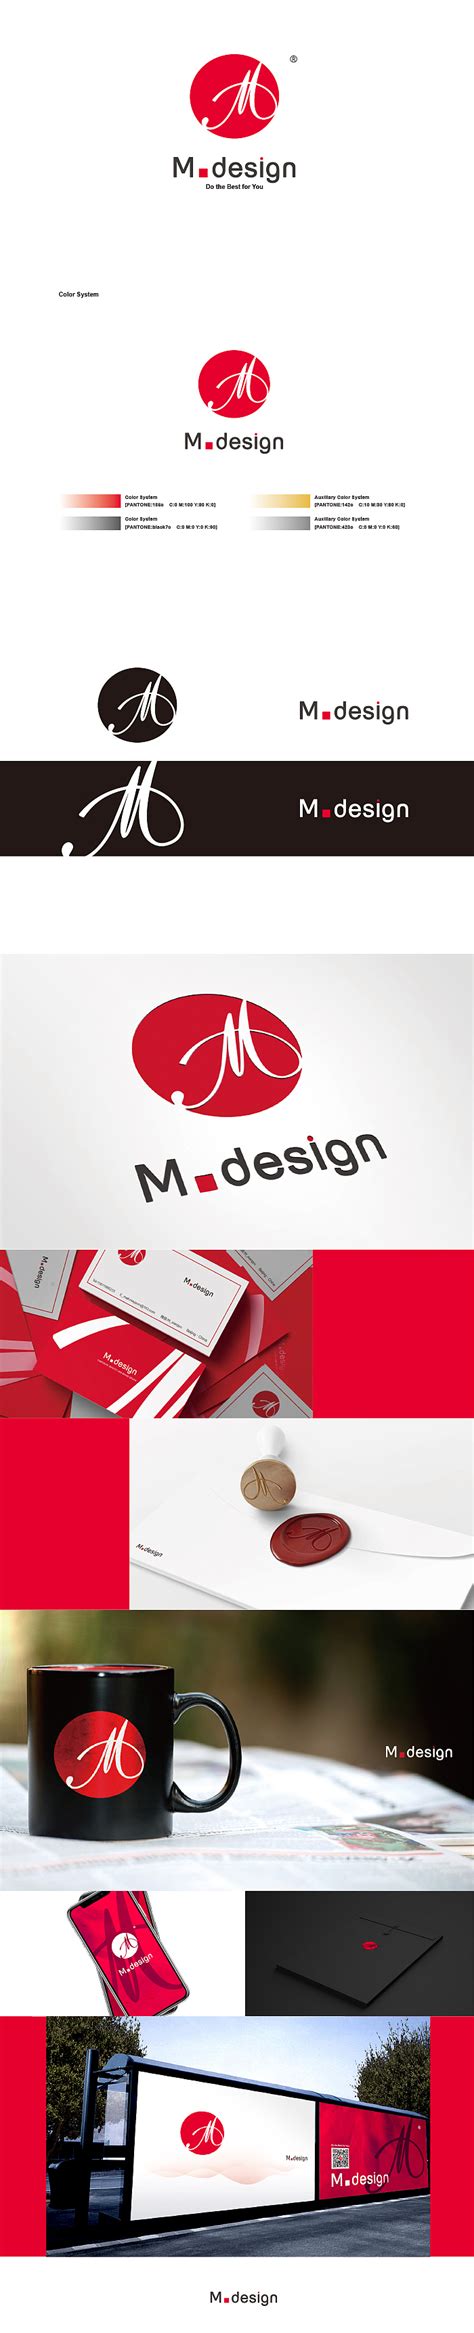 品牌设计工作室 - 品牌设计工作室 - 视觉传达设计系 - 中国美术学院设计学院